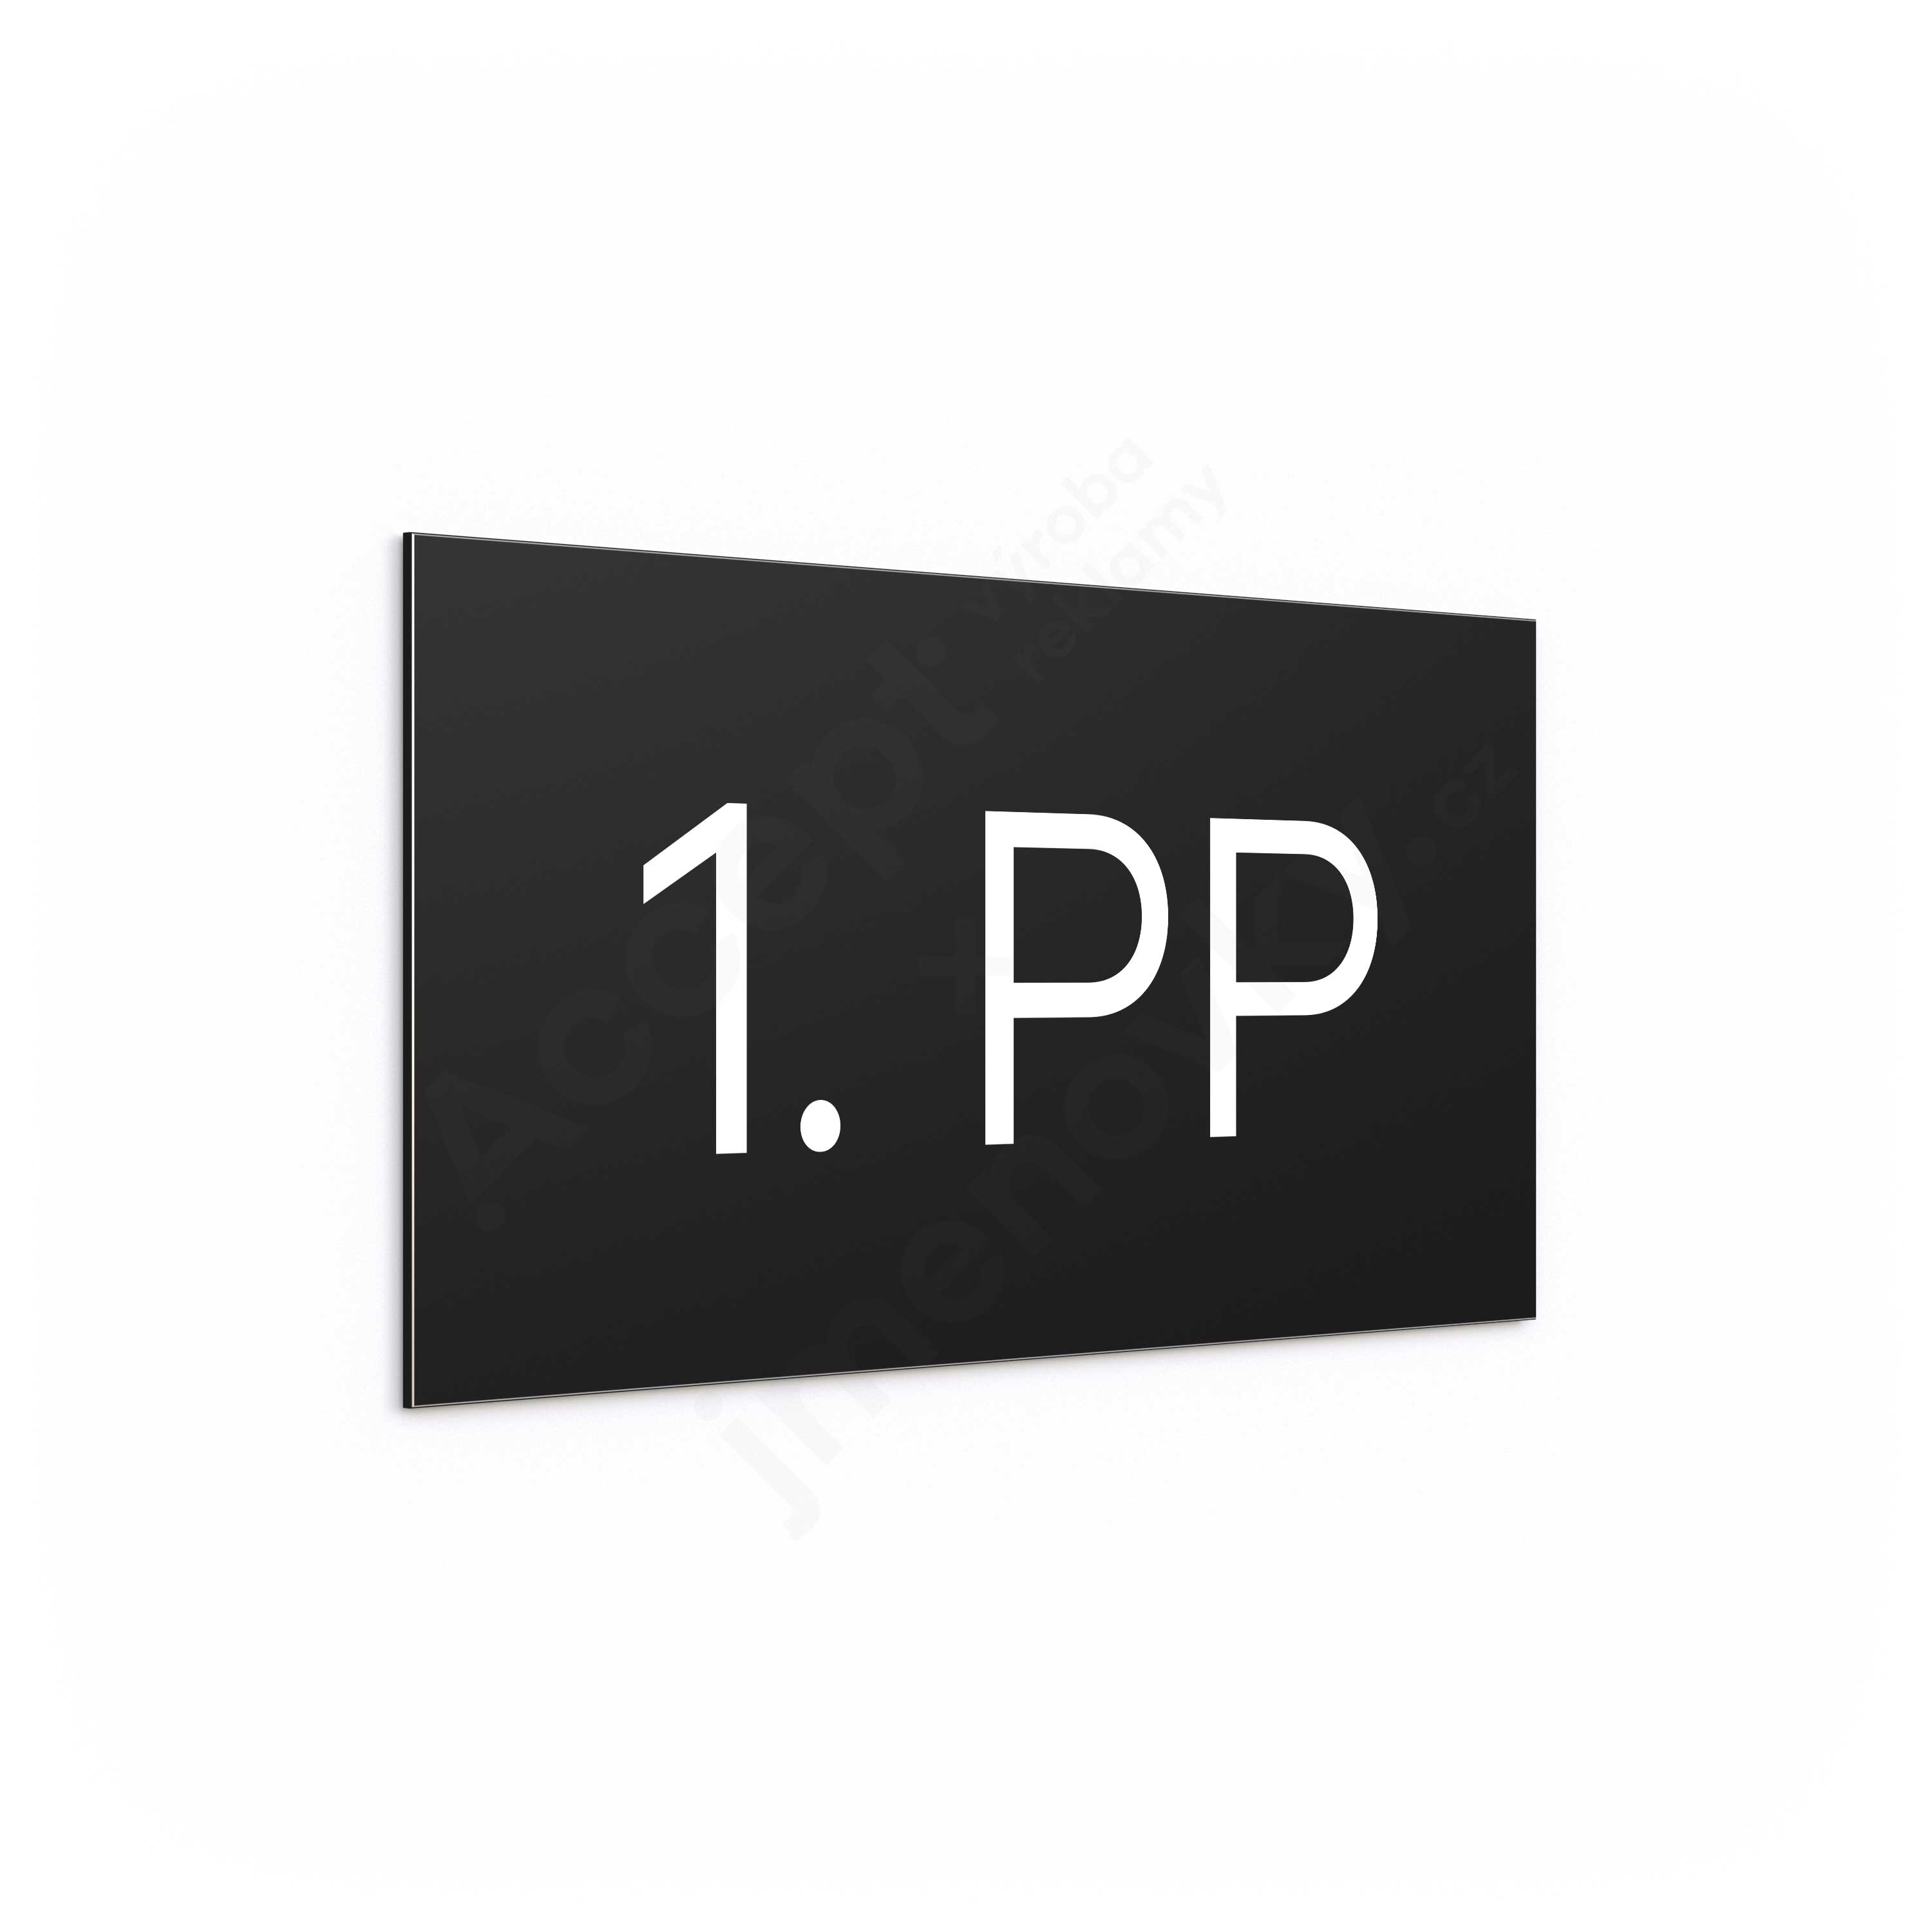 Označení podlaží "1. PP" - černá tabulka - bílý popis